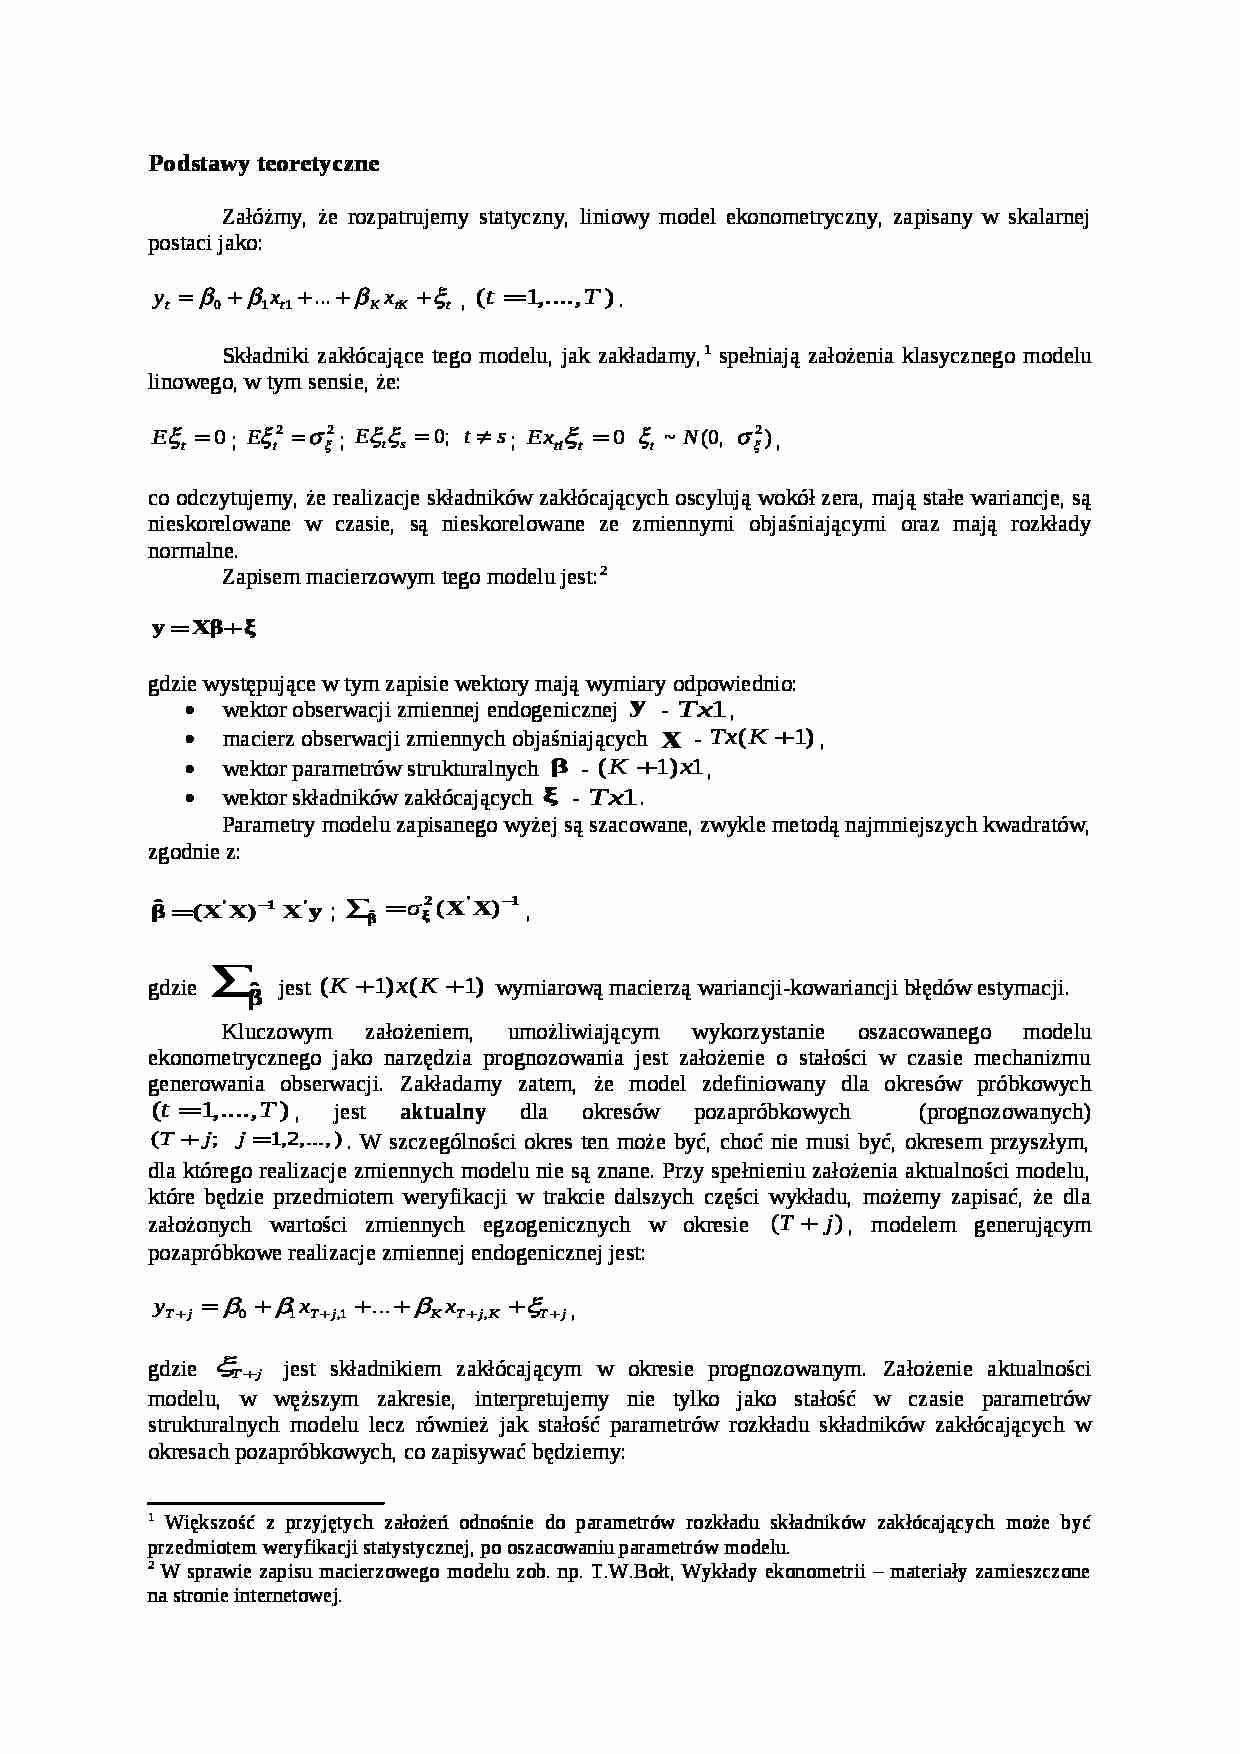 Podstawy teoretyczne - wykład - strona 1